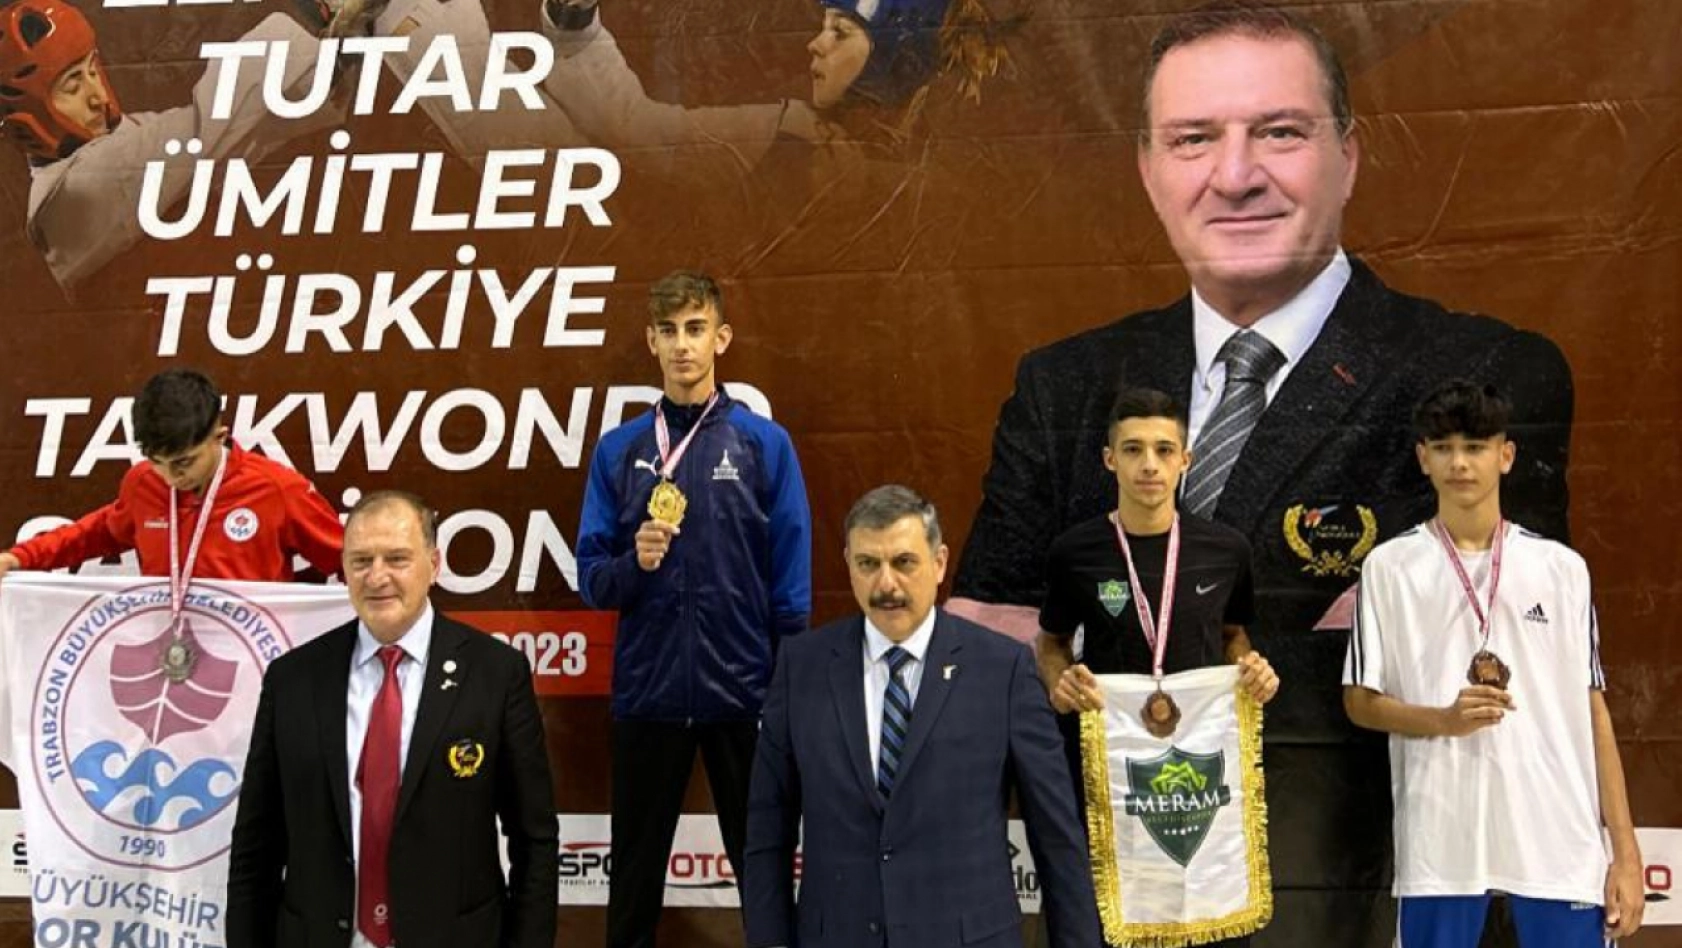 Meramlı sporcu Türkiye üçüncüsü oldu